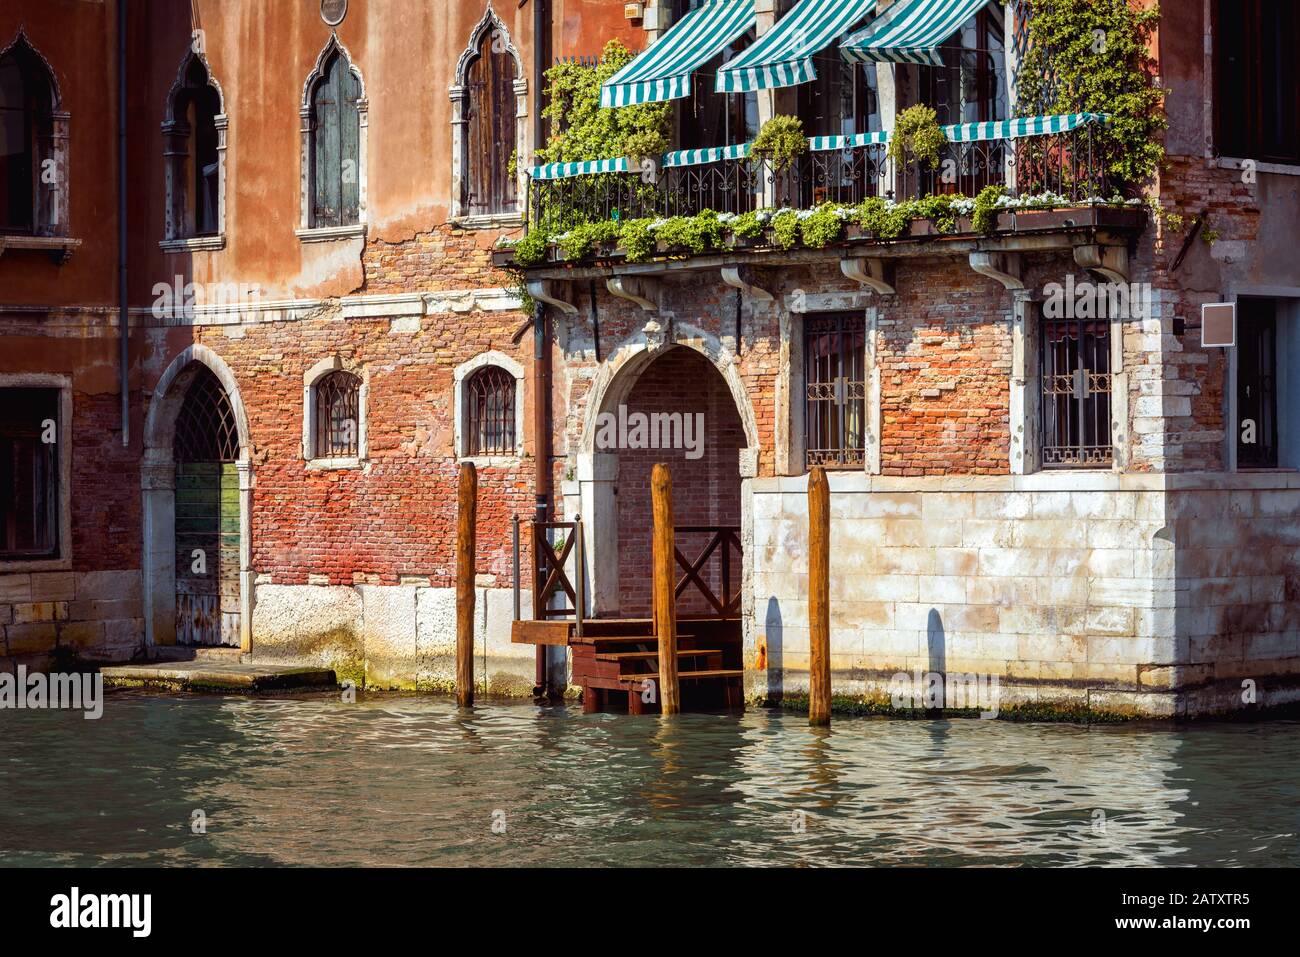 Maison Ancienne, Venise, Italie. Entrée à la maison résidentielle ou à l'hôtel près du Grand Canal, célèbre rue de Venise. Vieux bâtiment sur l'eau, vue traditionnelle Banque D'Images